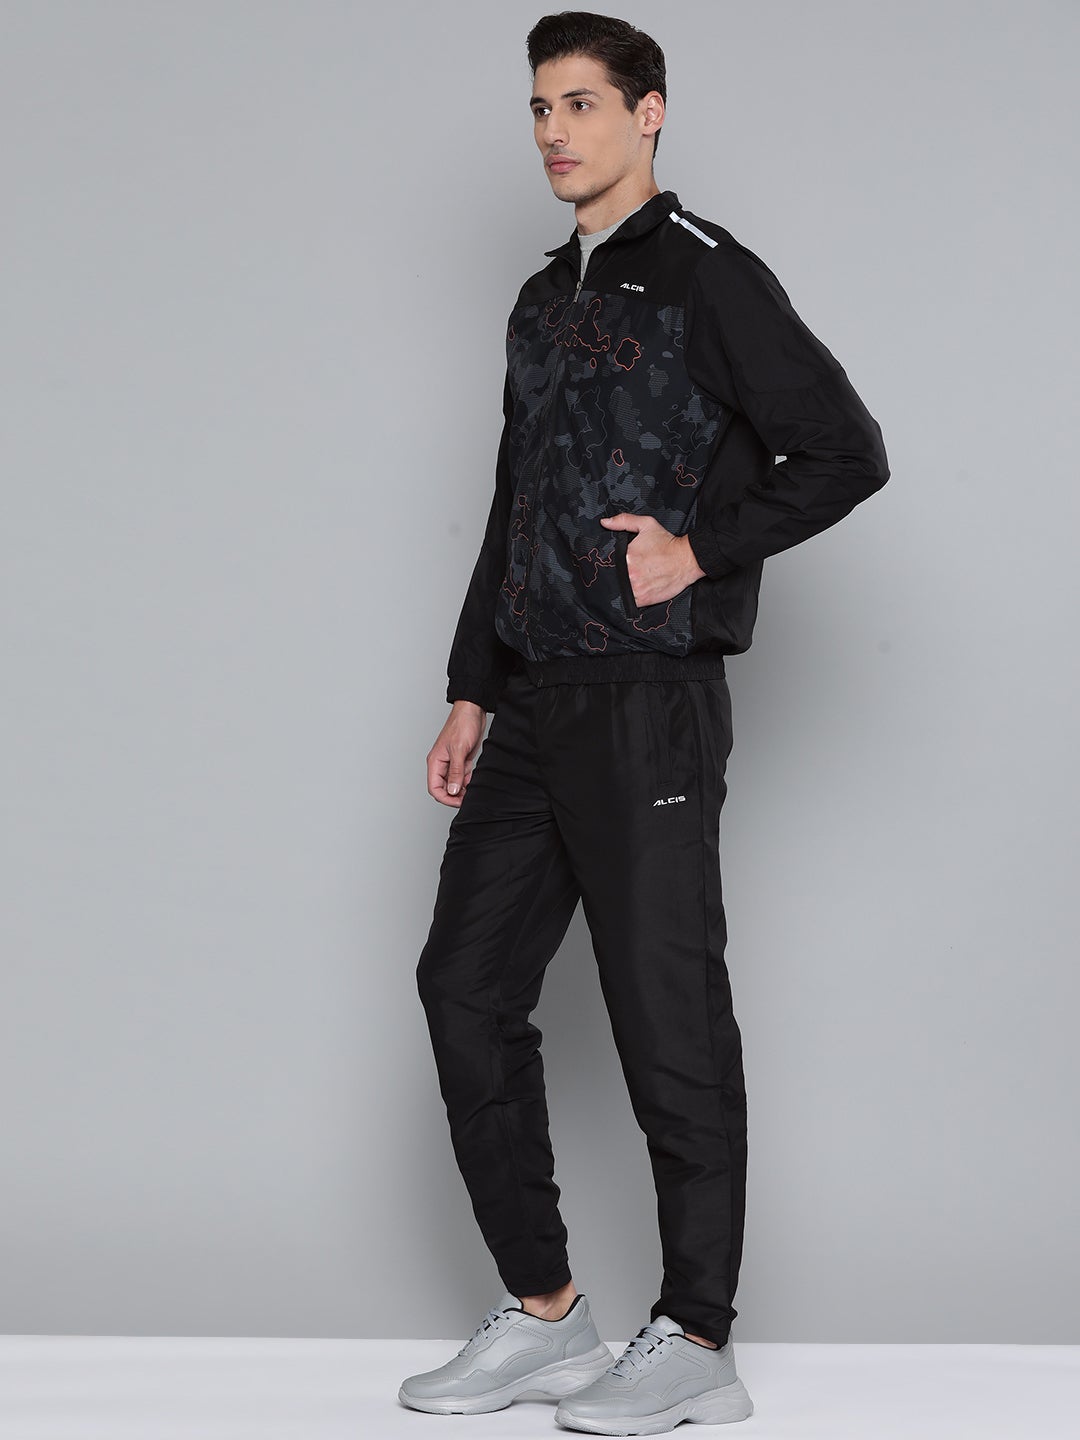 Alcis Men Self Design Black Track Suit